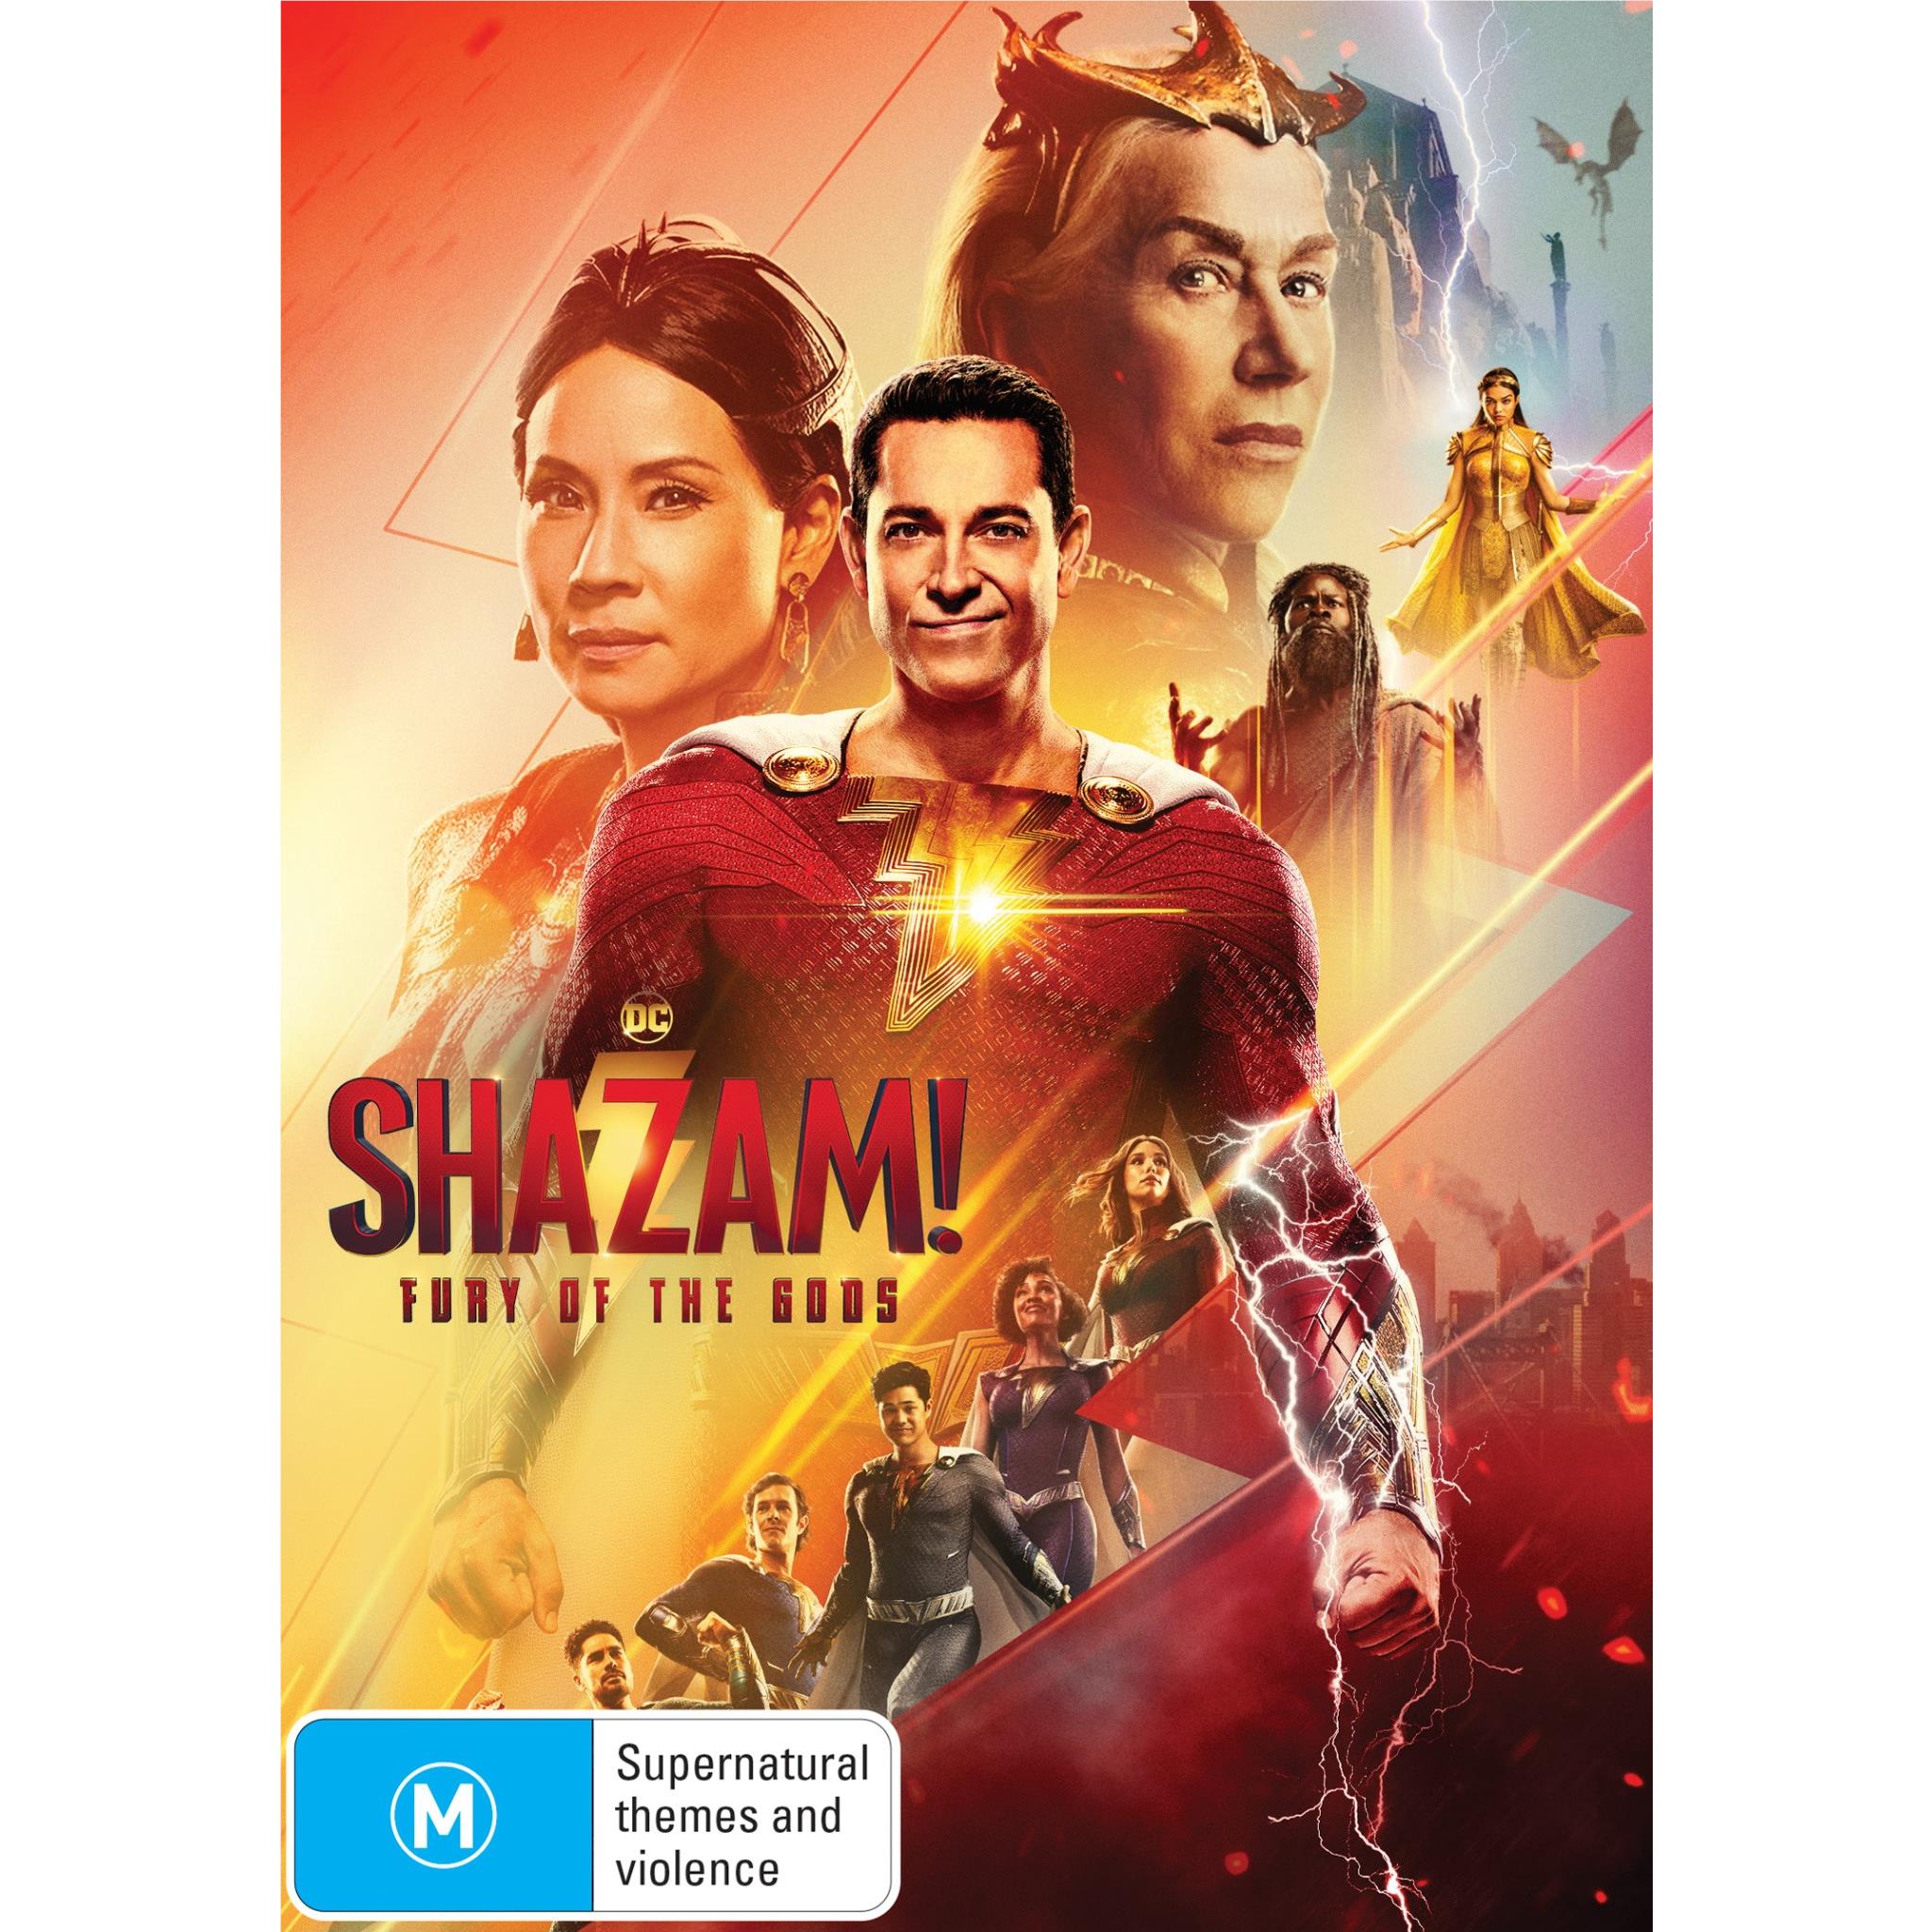 Shazam! Fury of the Gods: Everything to Know